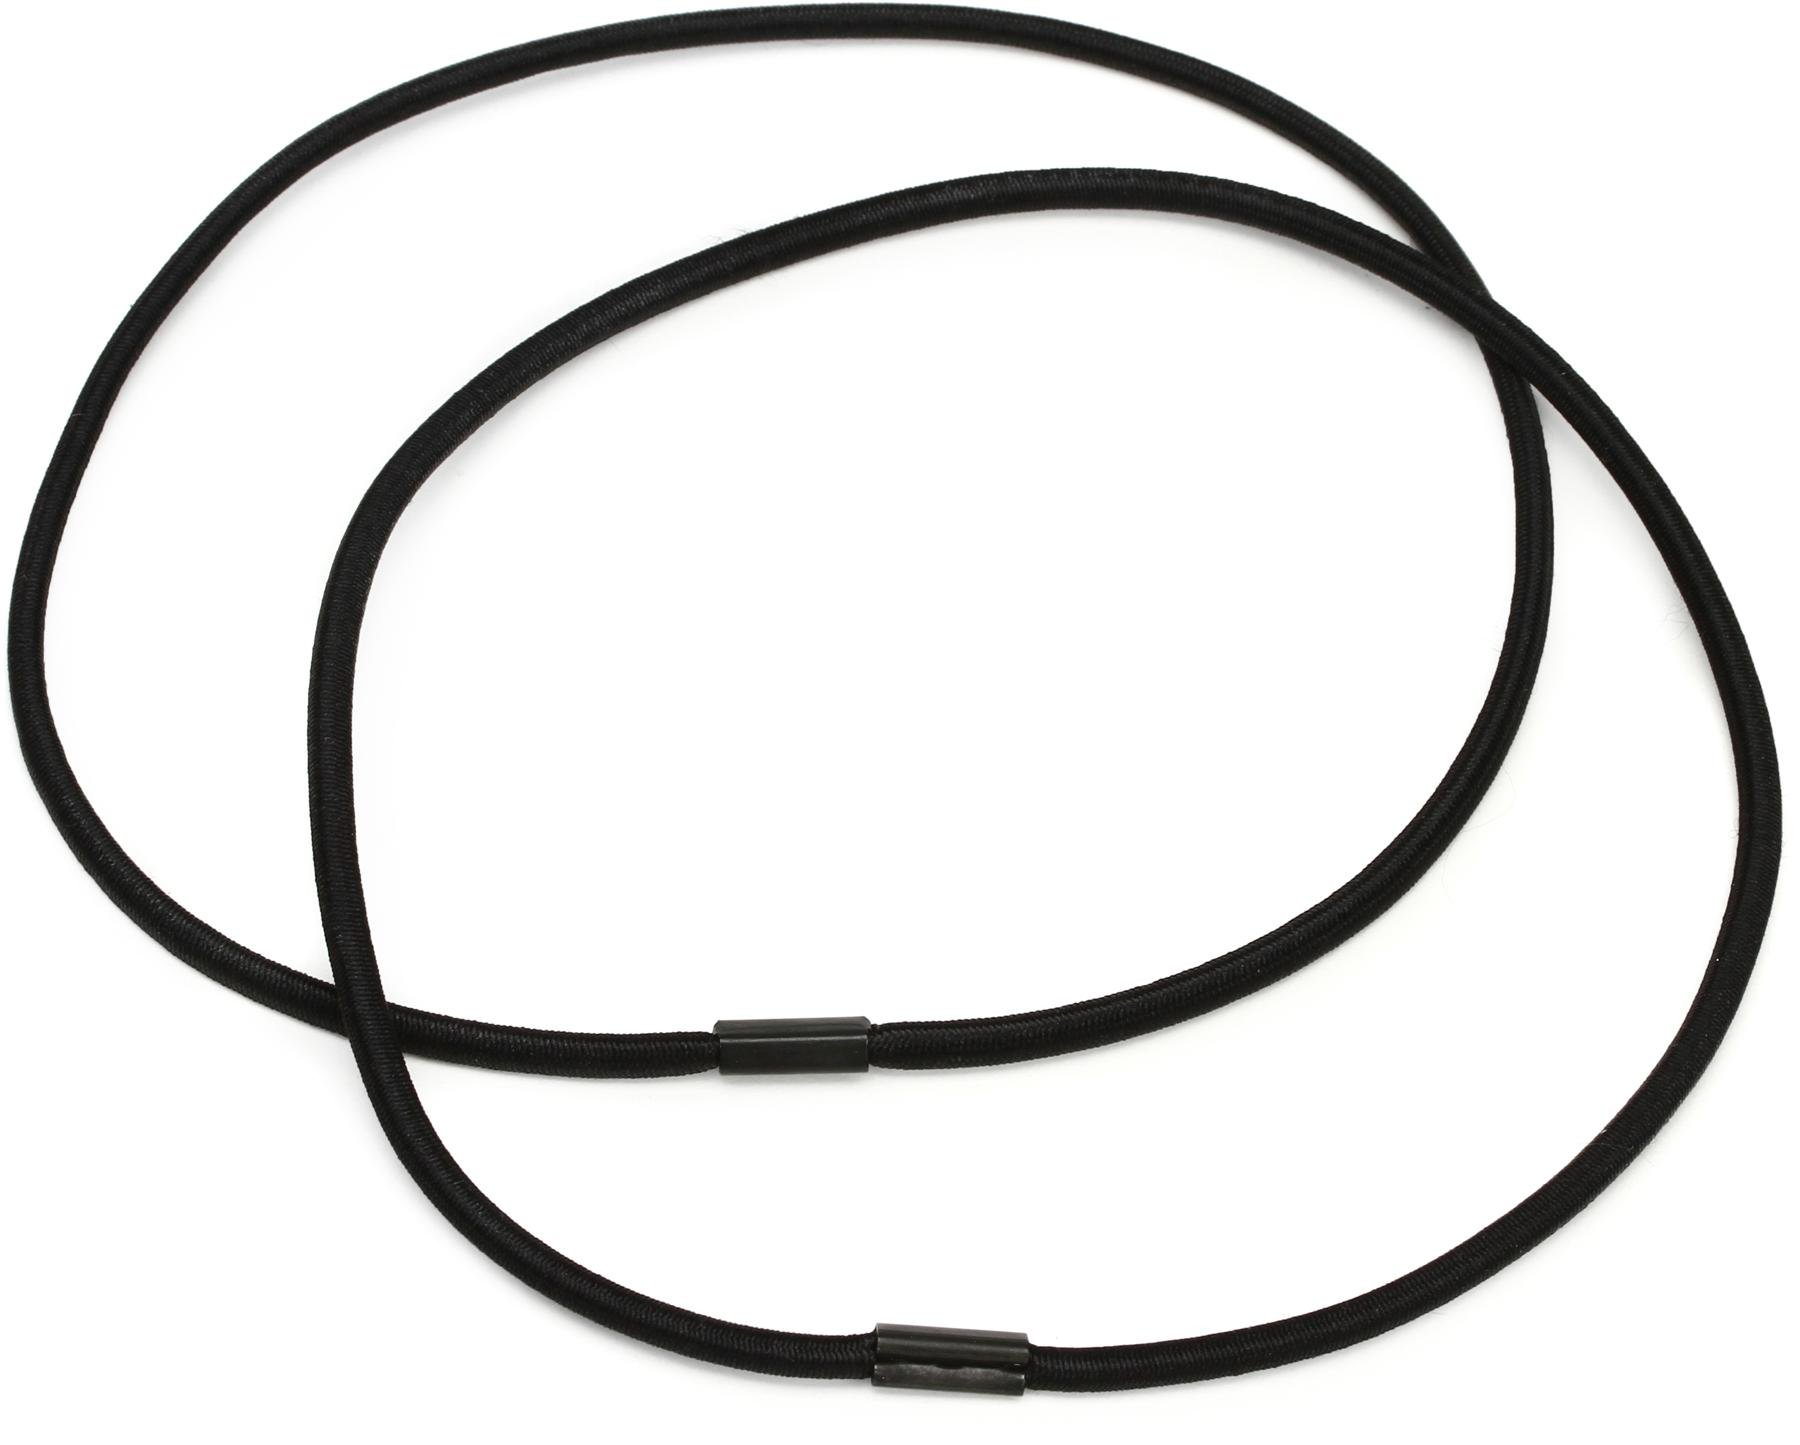 large black elastic bands